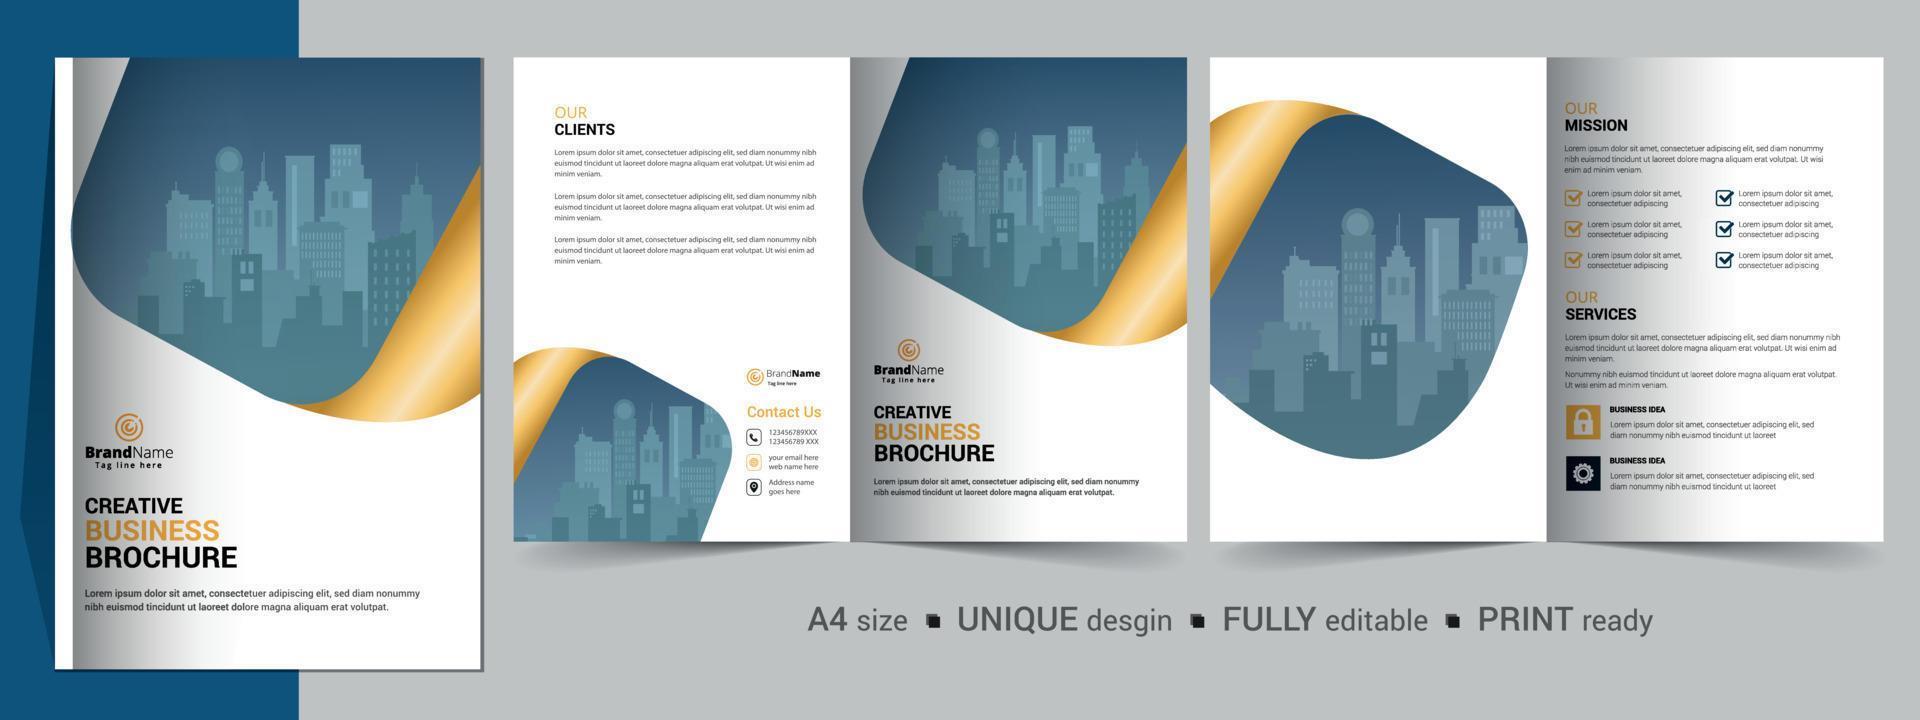 modelo de design de brochura bifold para sua empresa, corporativa, negócios, publicidade, marketing, agência e negócios na Internet. vetor